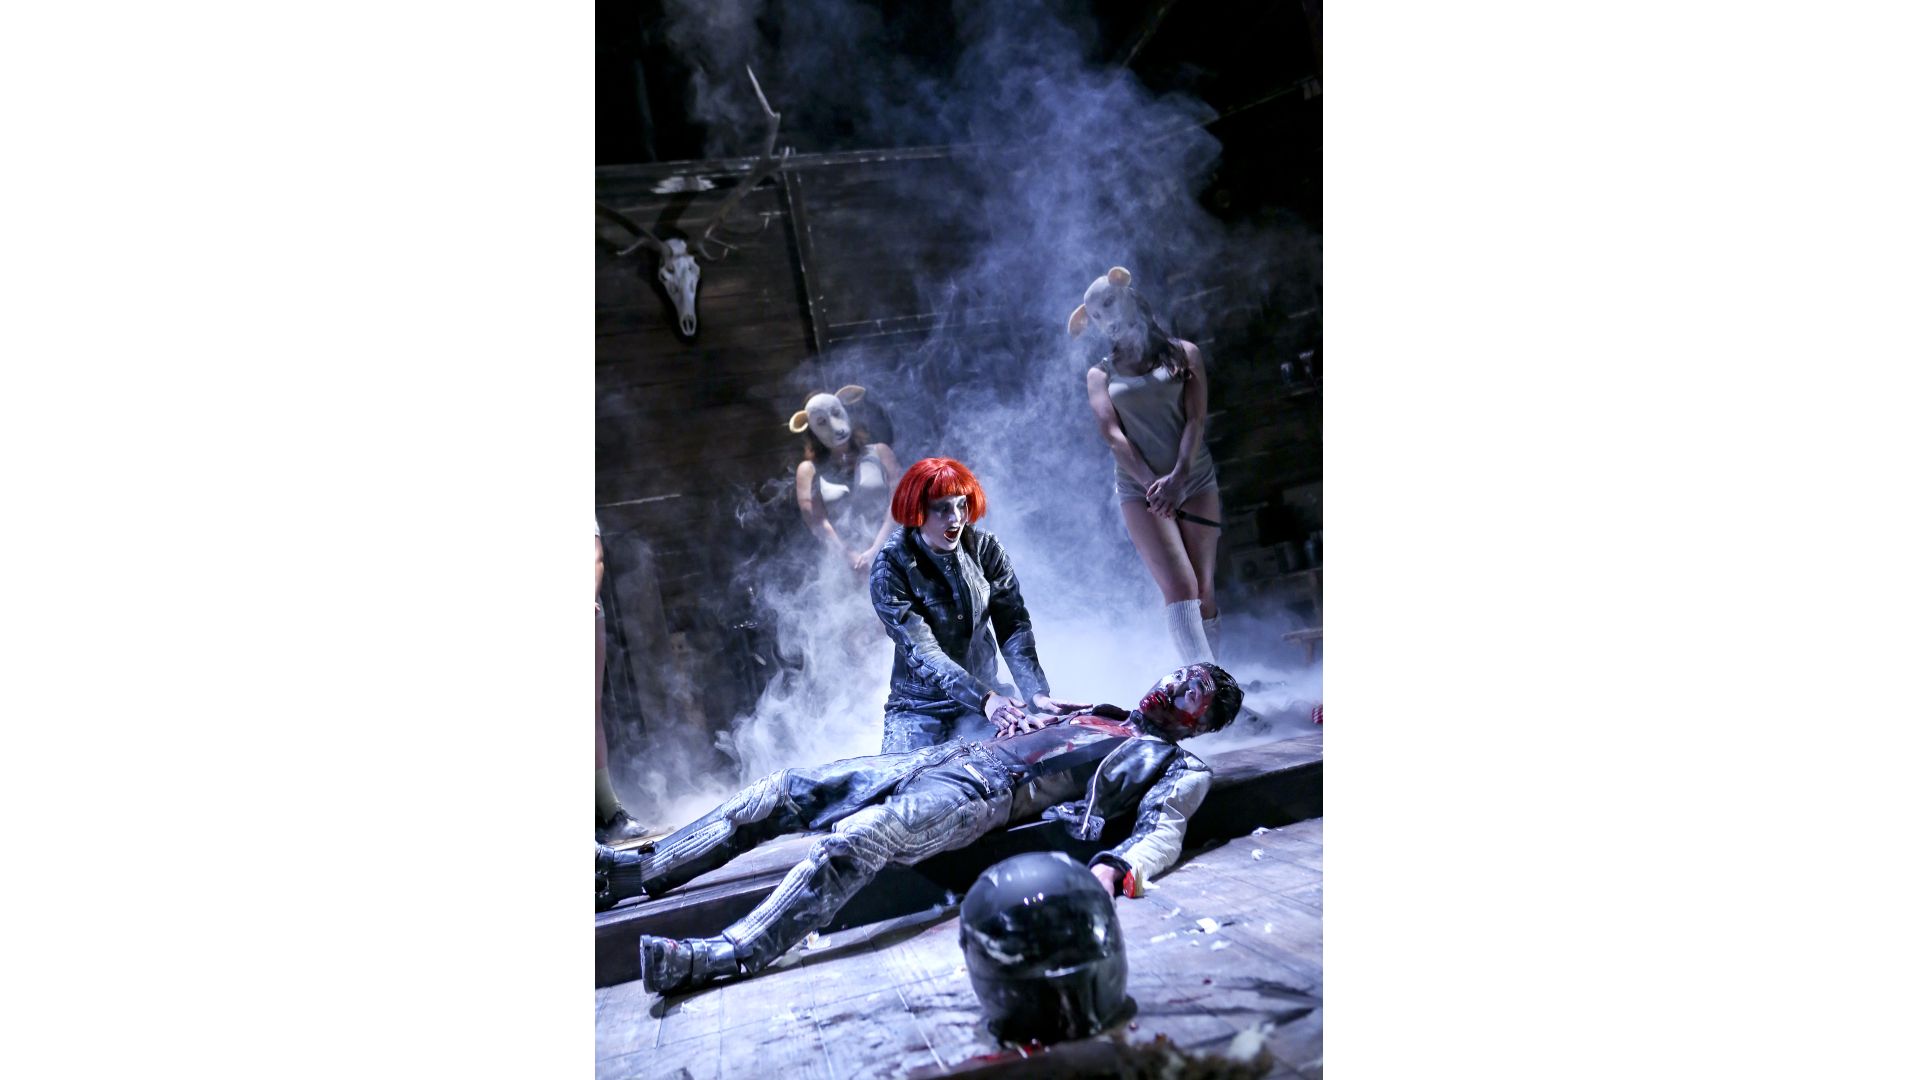 The Black Forest Chainsaw Opera // Inga Schäfer, Lukas Hupfeld // Birgit Hupfeld / 2018